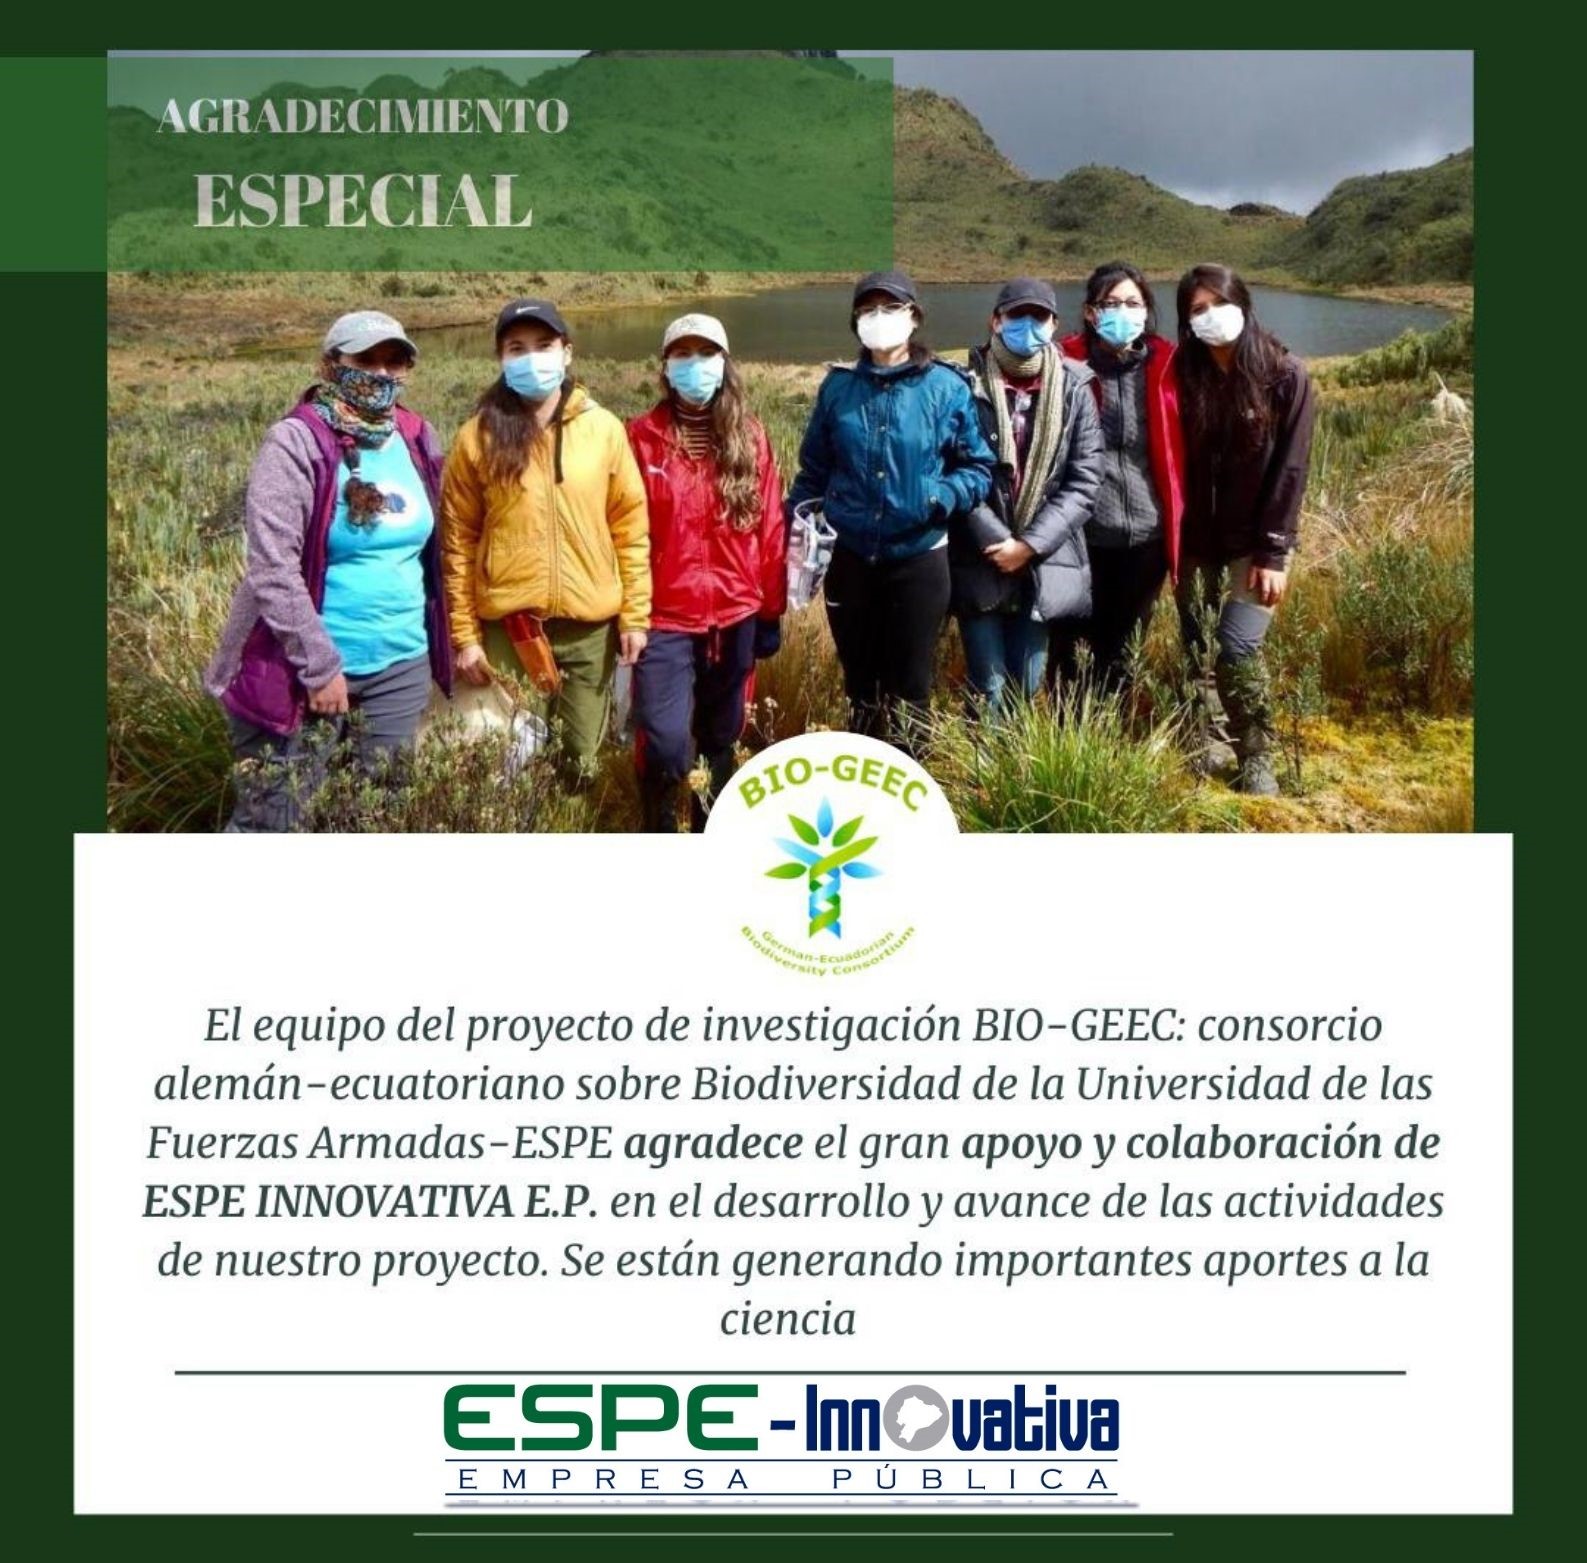 Bio-Geec: Consorcio alemán-ecuatoriano sobre Biodiversidad